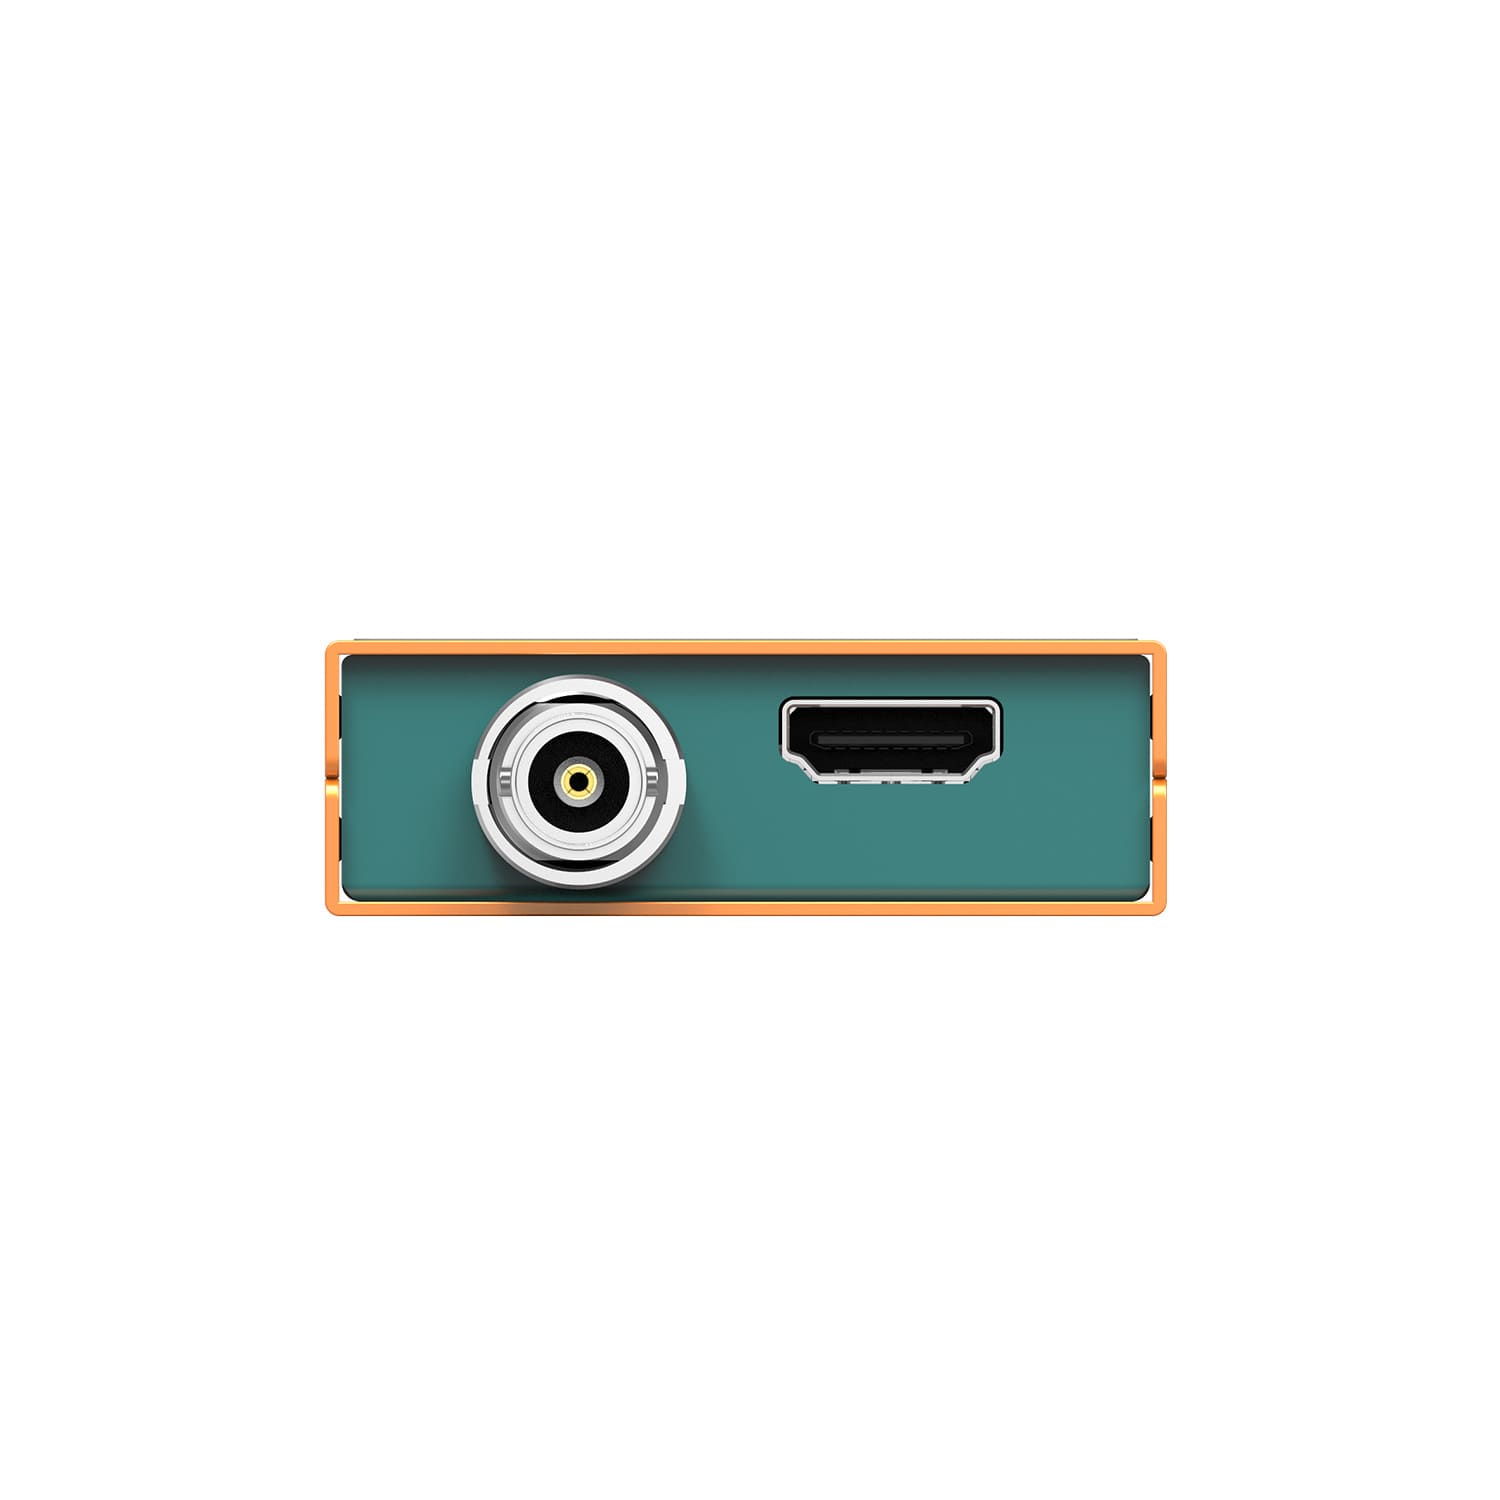 Capture AvMatrix UC2018 (HDMI/SDI – USB 3.1)